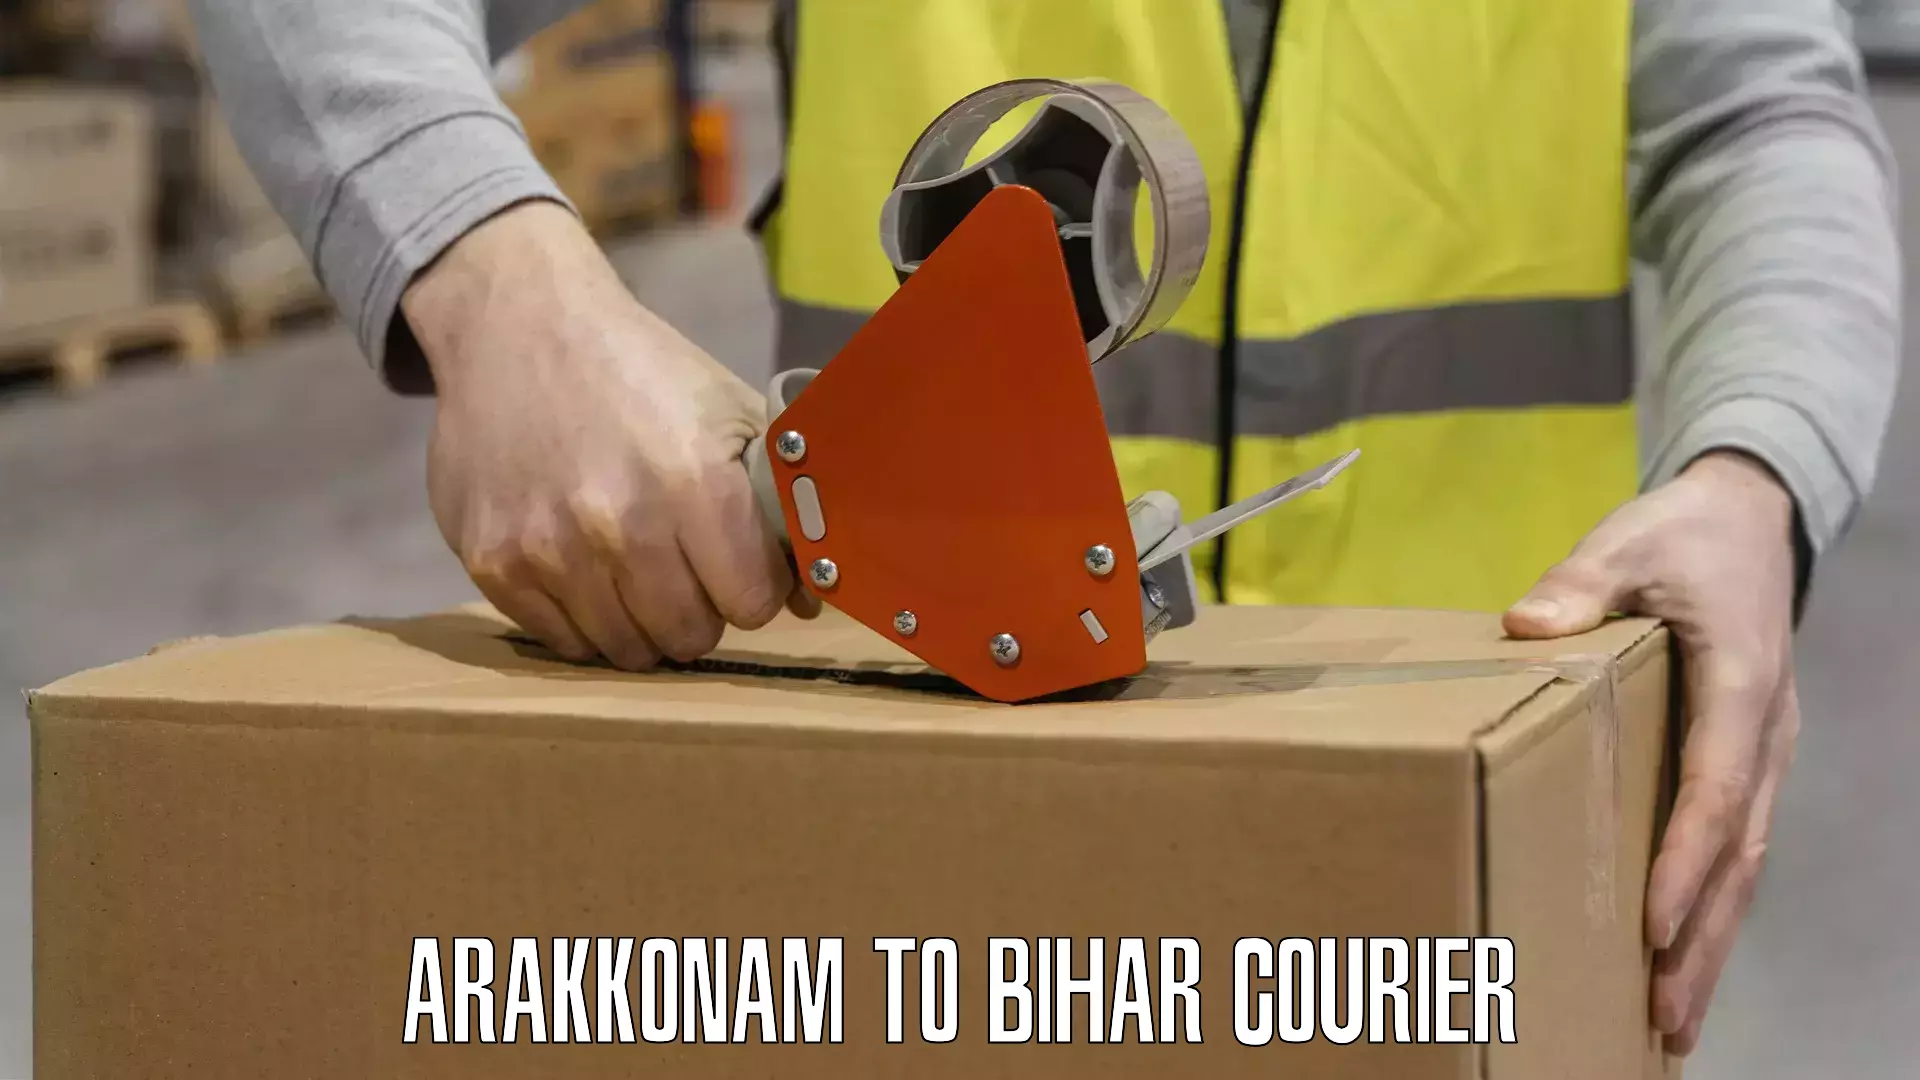 Flexible delivery scheduling Arakkonam to Marhowrah